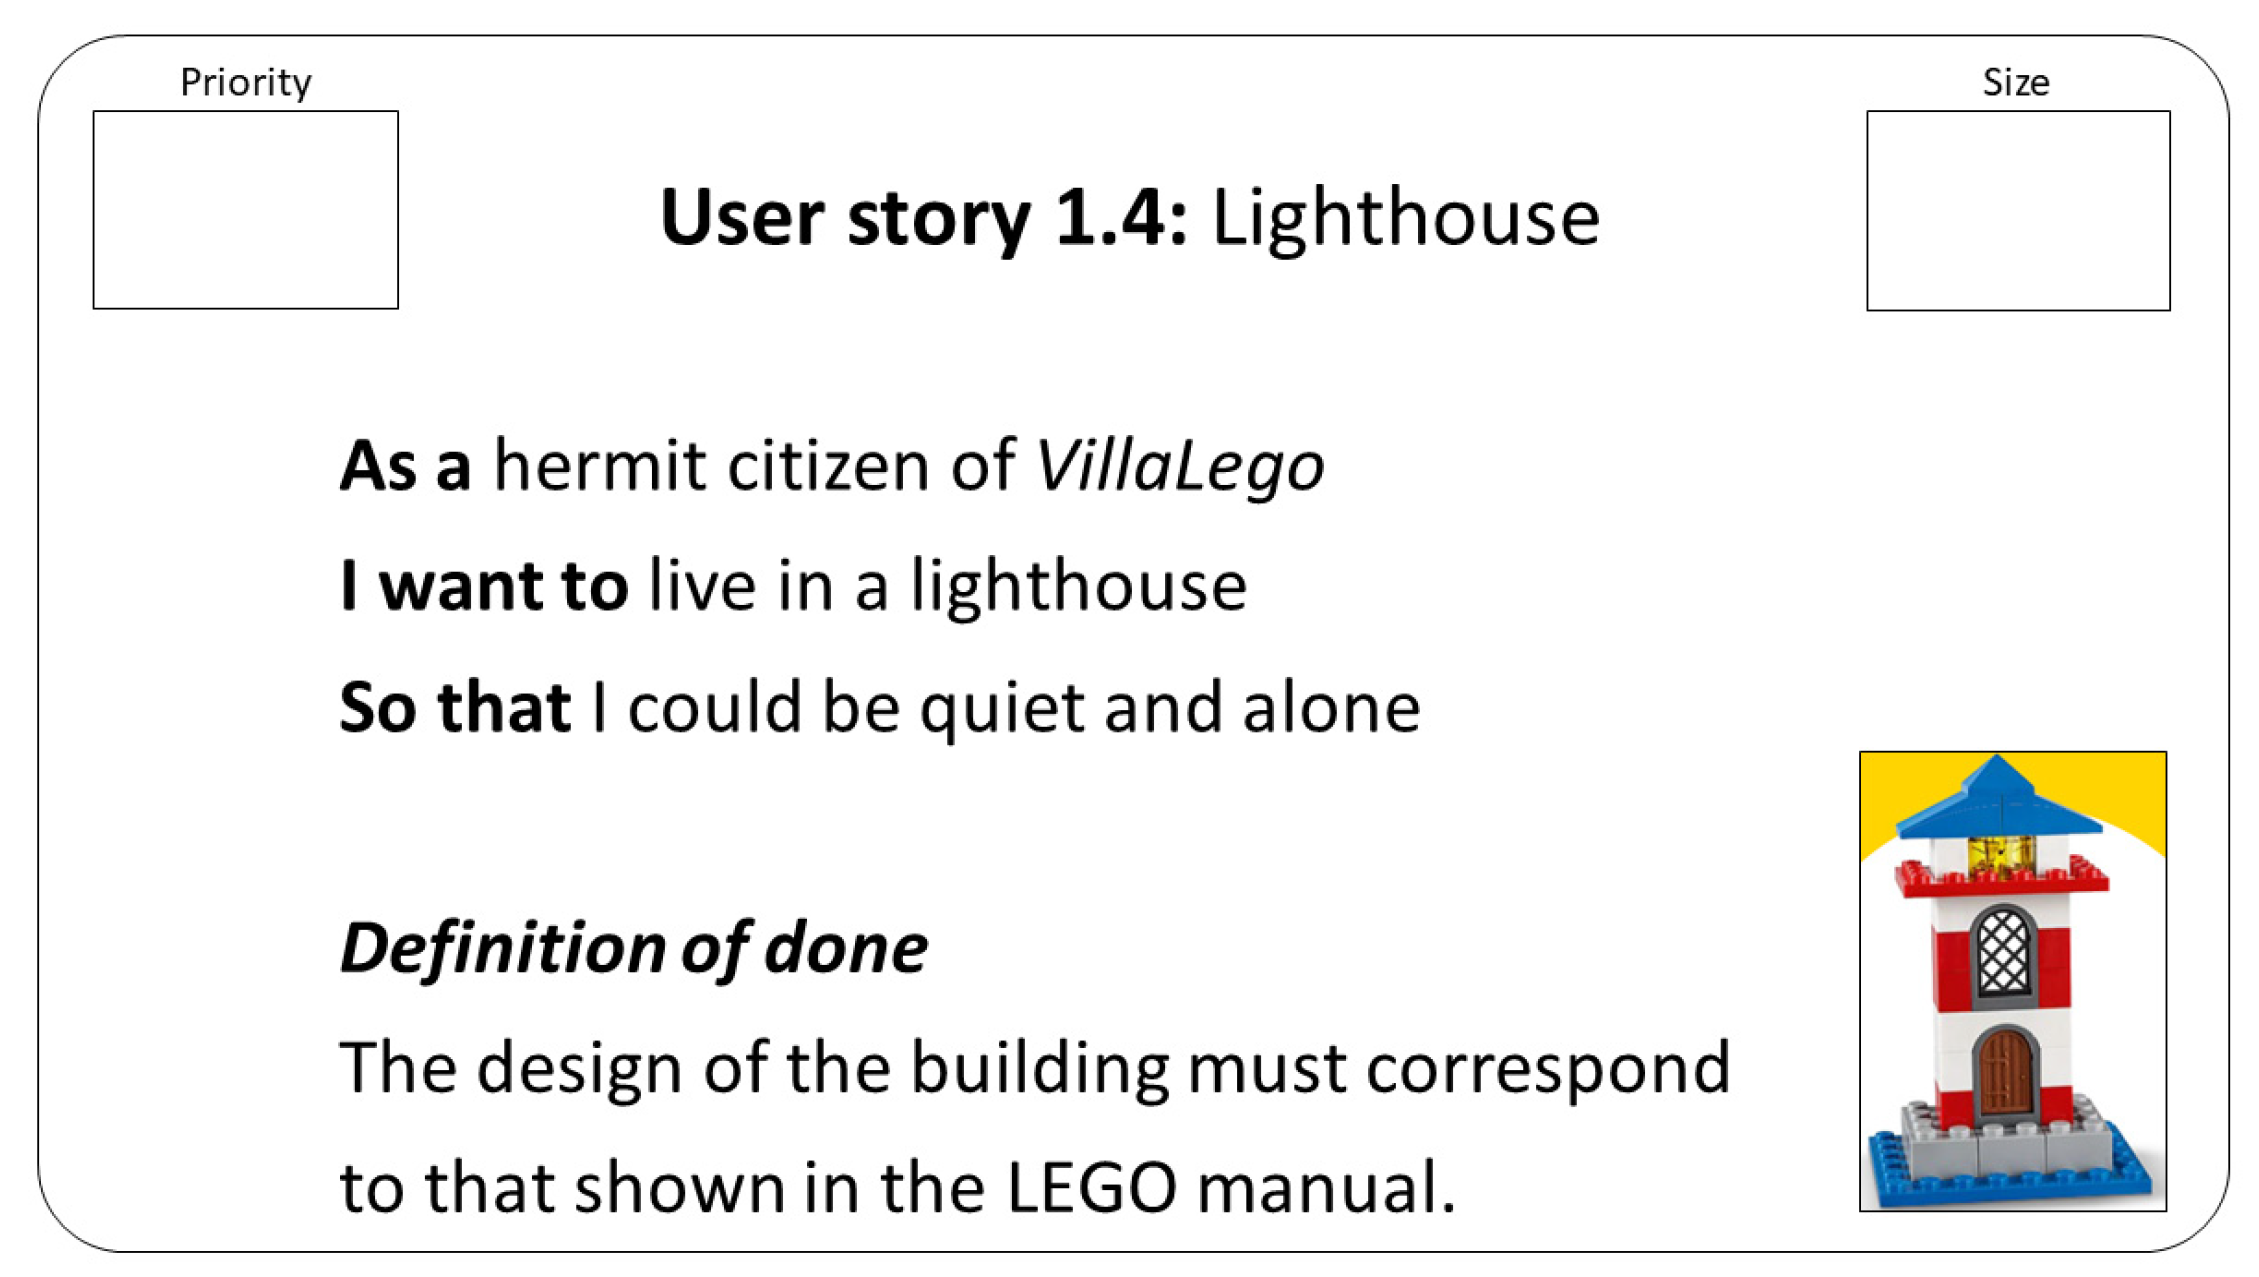 Lego thérapie - Ludi Briques